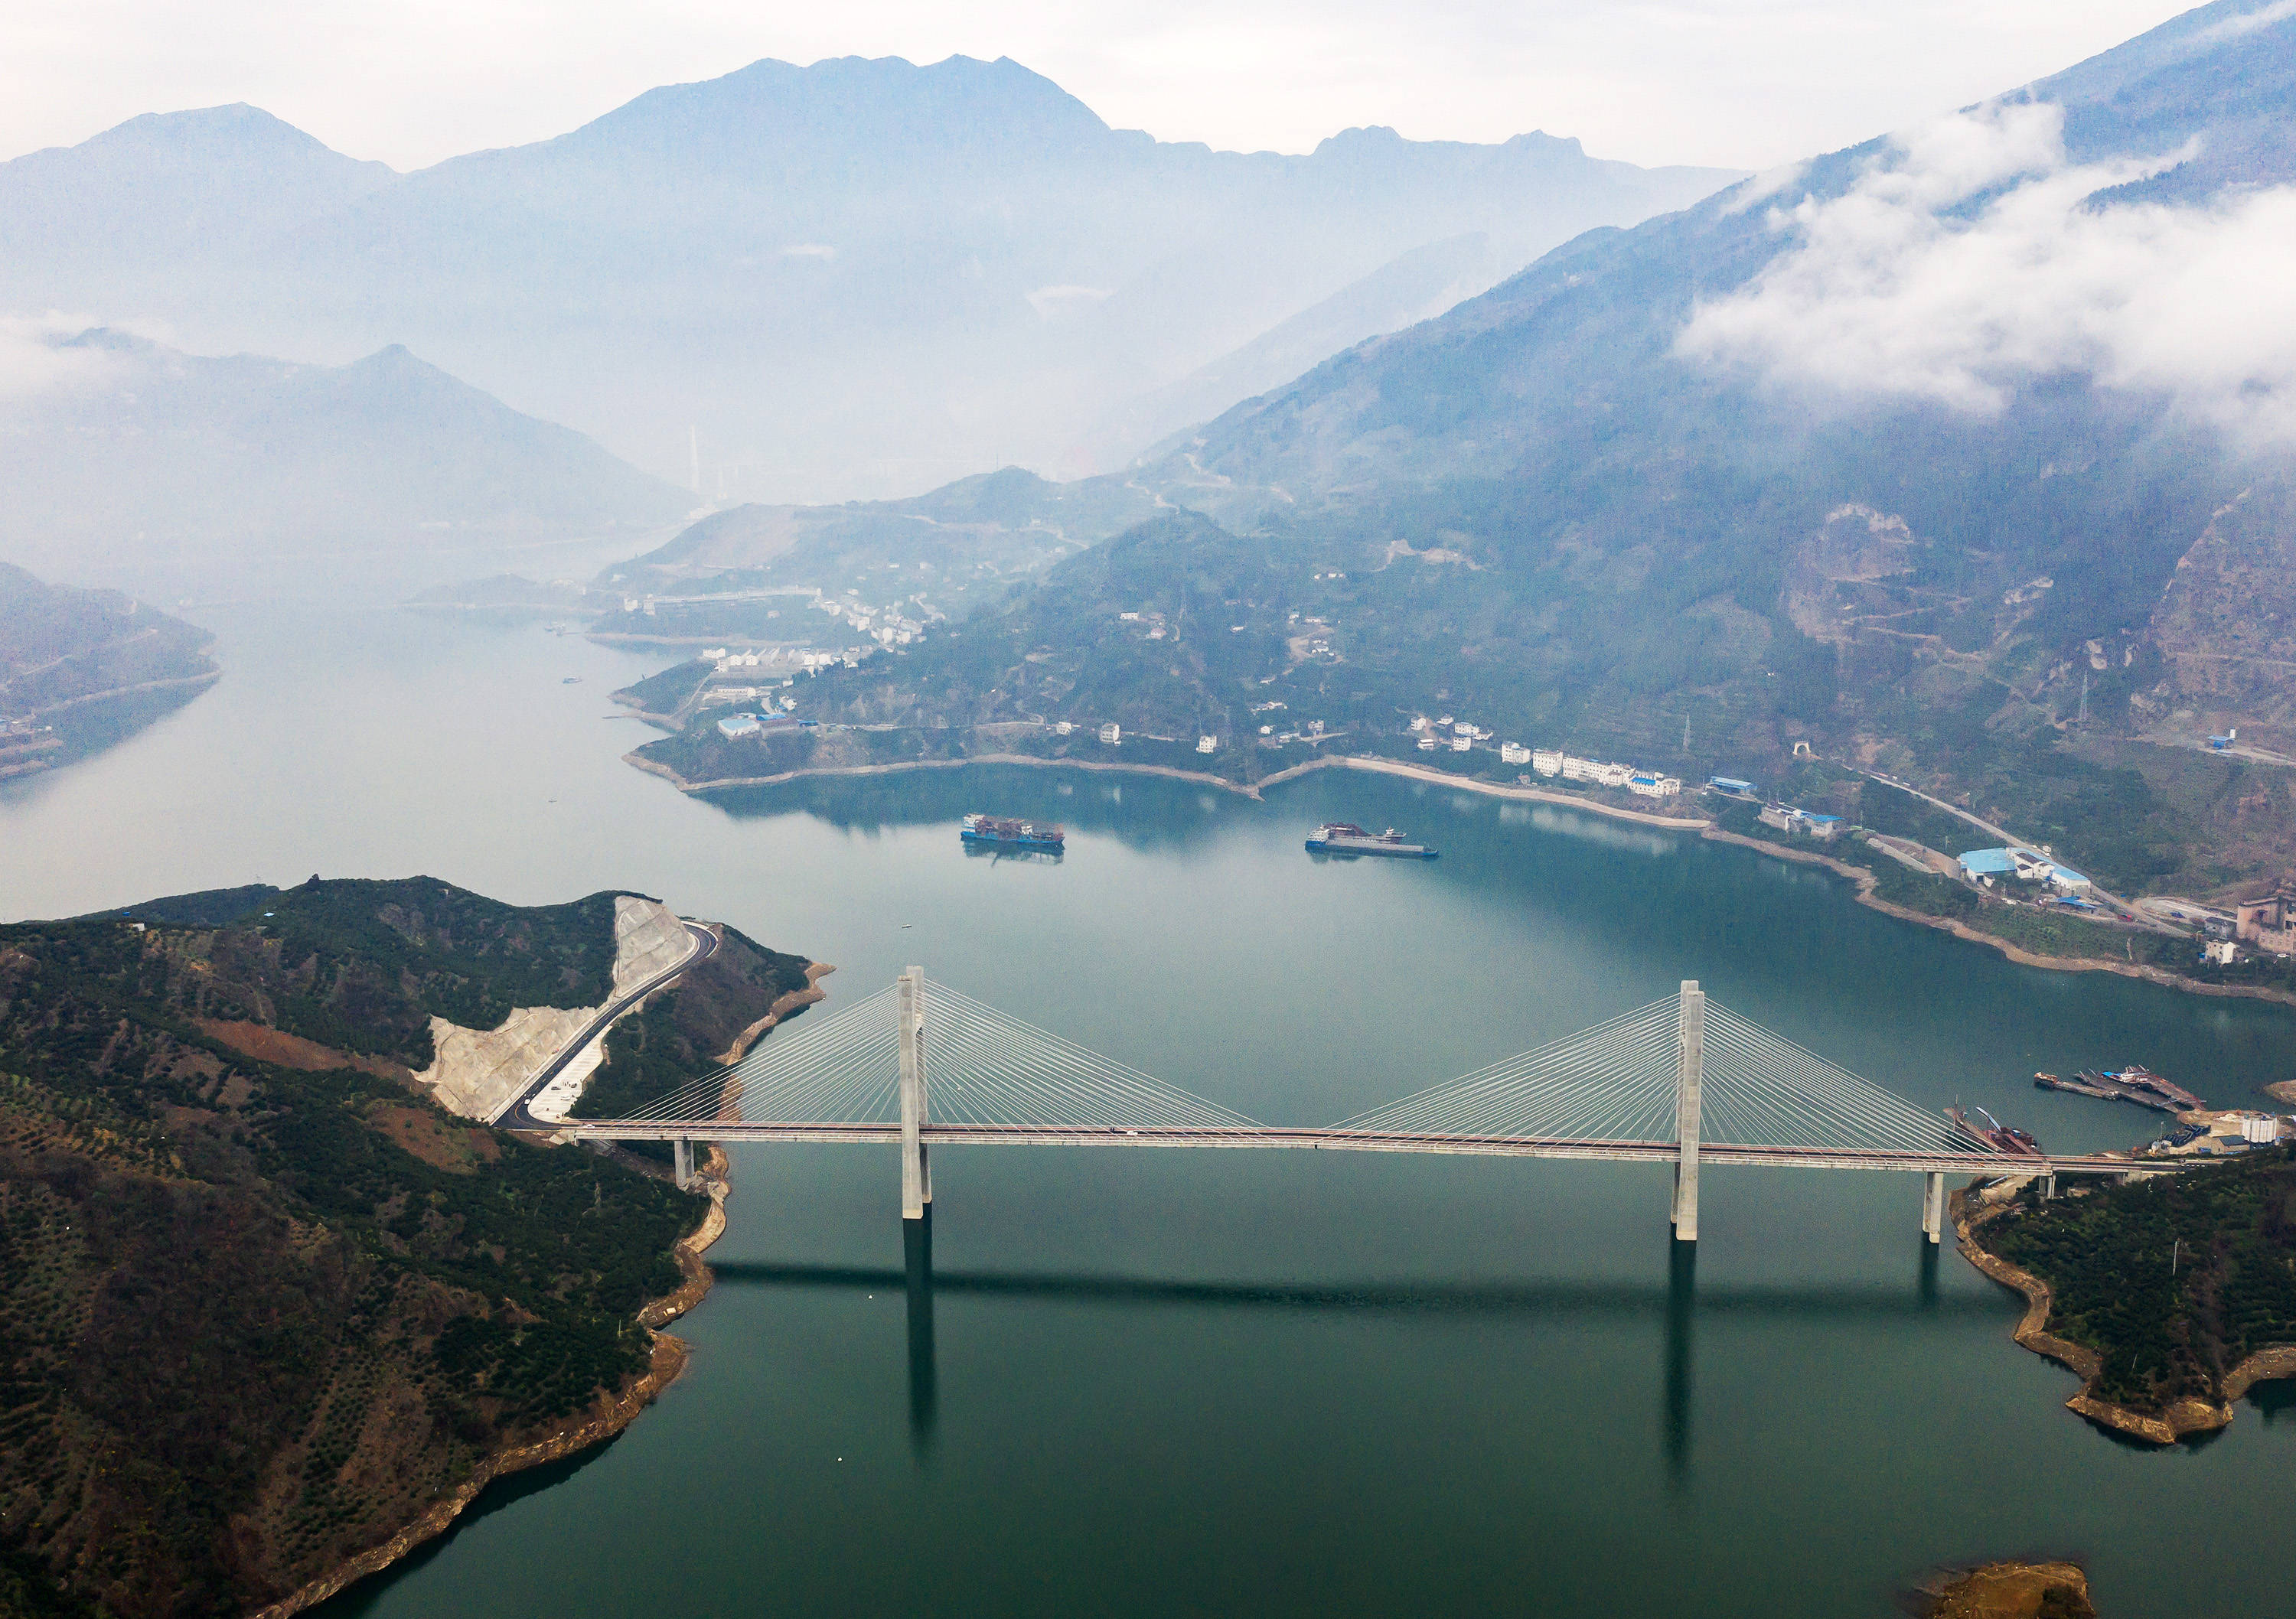 童庄河是三峡库区的一条长江支流,童庄河大桥建成通车,进一步优化了